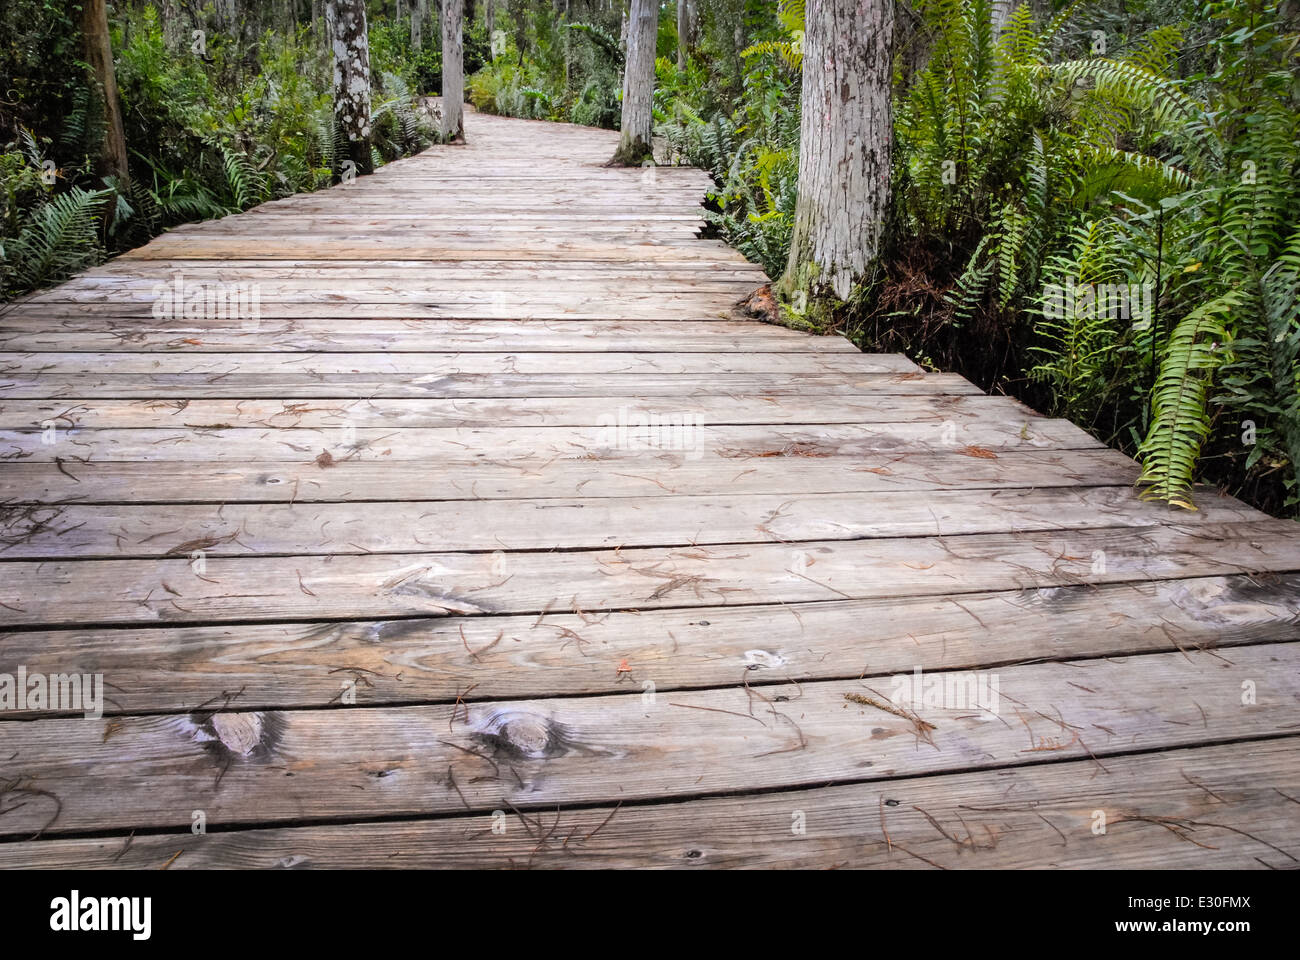 Cypress Swamp Promenade à Wellington Wildlife Refuge, un habitat du nord ouest de l'Everglades Boynton Beach, Floride, USA. Banque D'Images